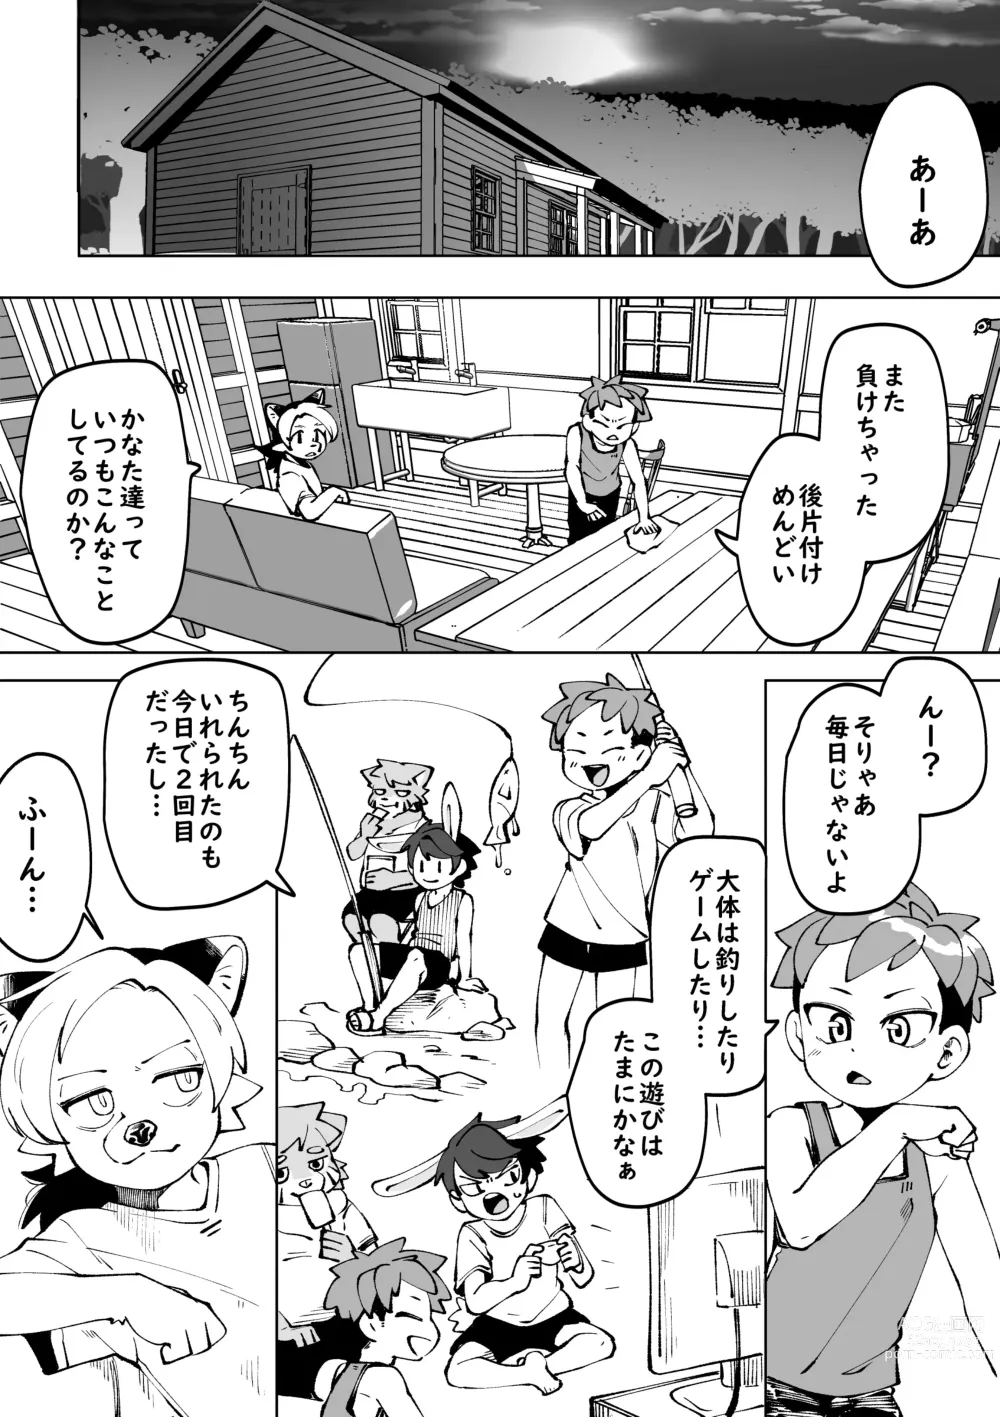 Page 45 of doujinshi Natsu ga owaru...